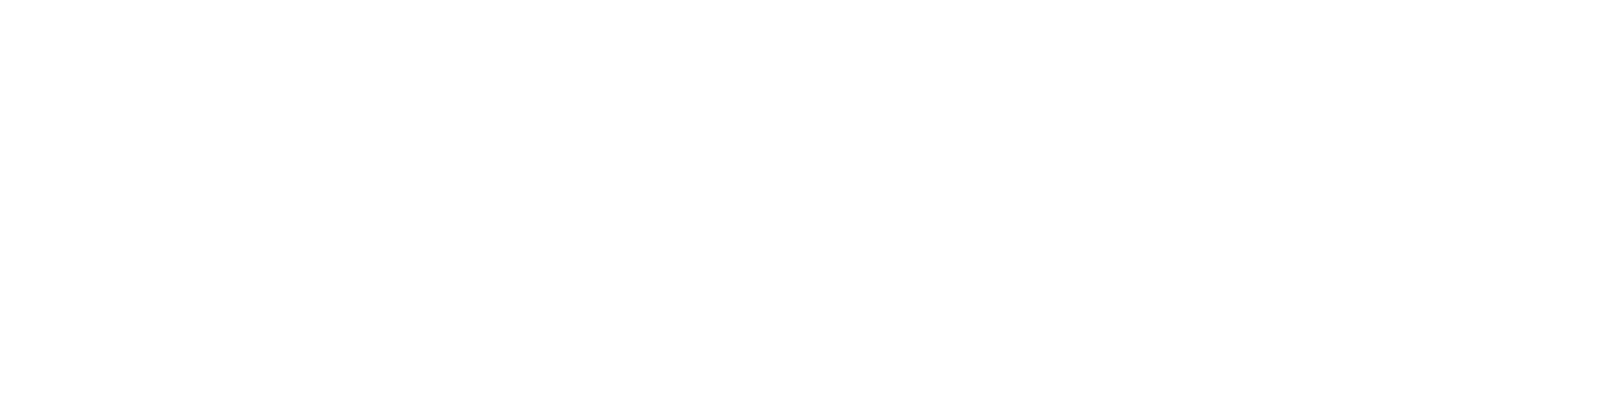 Happinet logo large for dark backgrounds (transparent PNG)